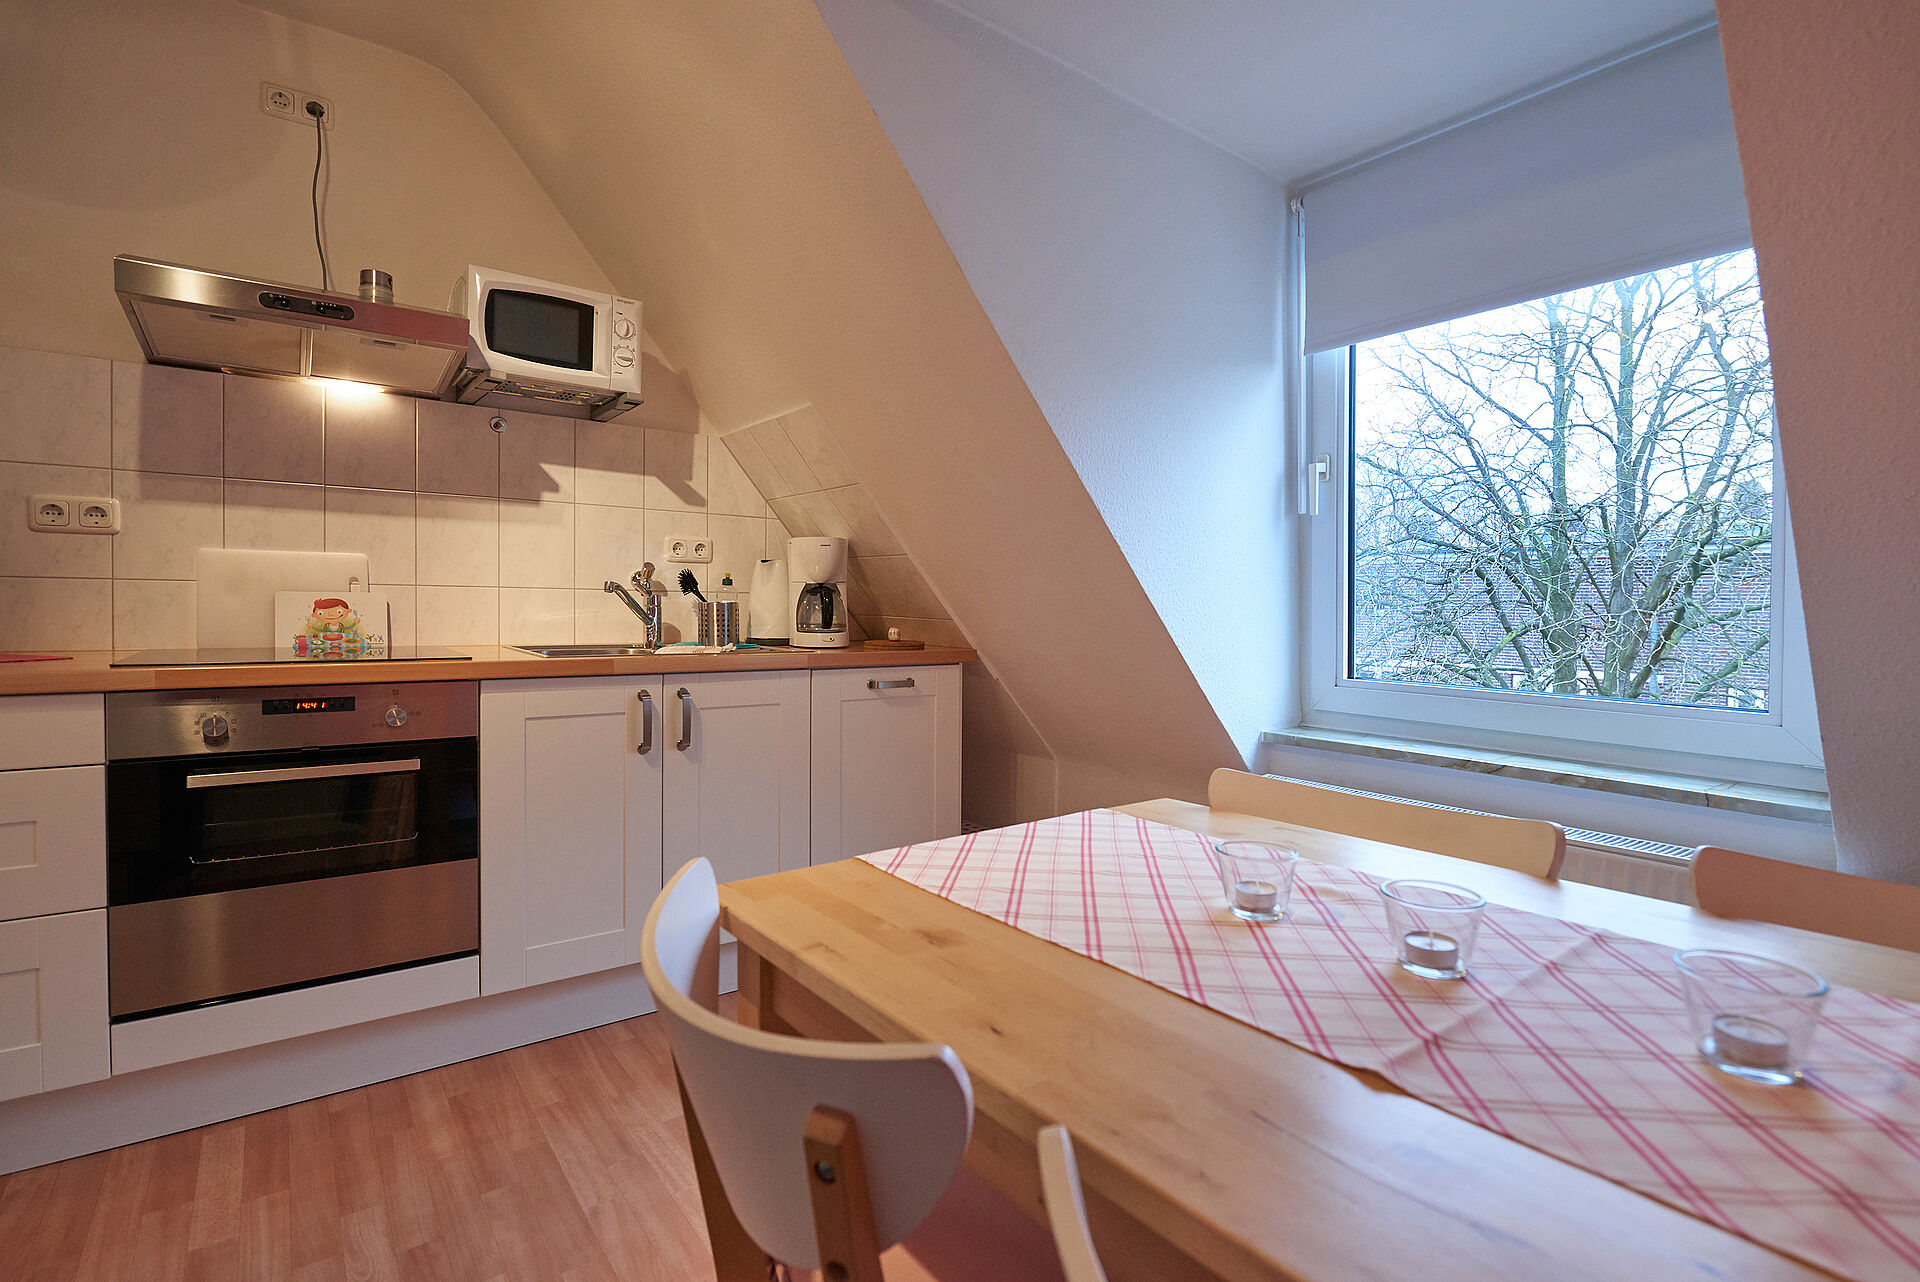 Küche mit Dachschräge, weiße Küchenschränke, eine Mikrowelle und ein Küchentisch mit Stühlen